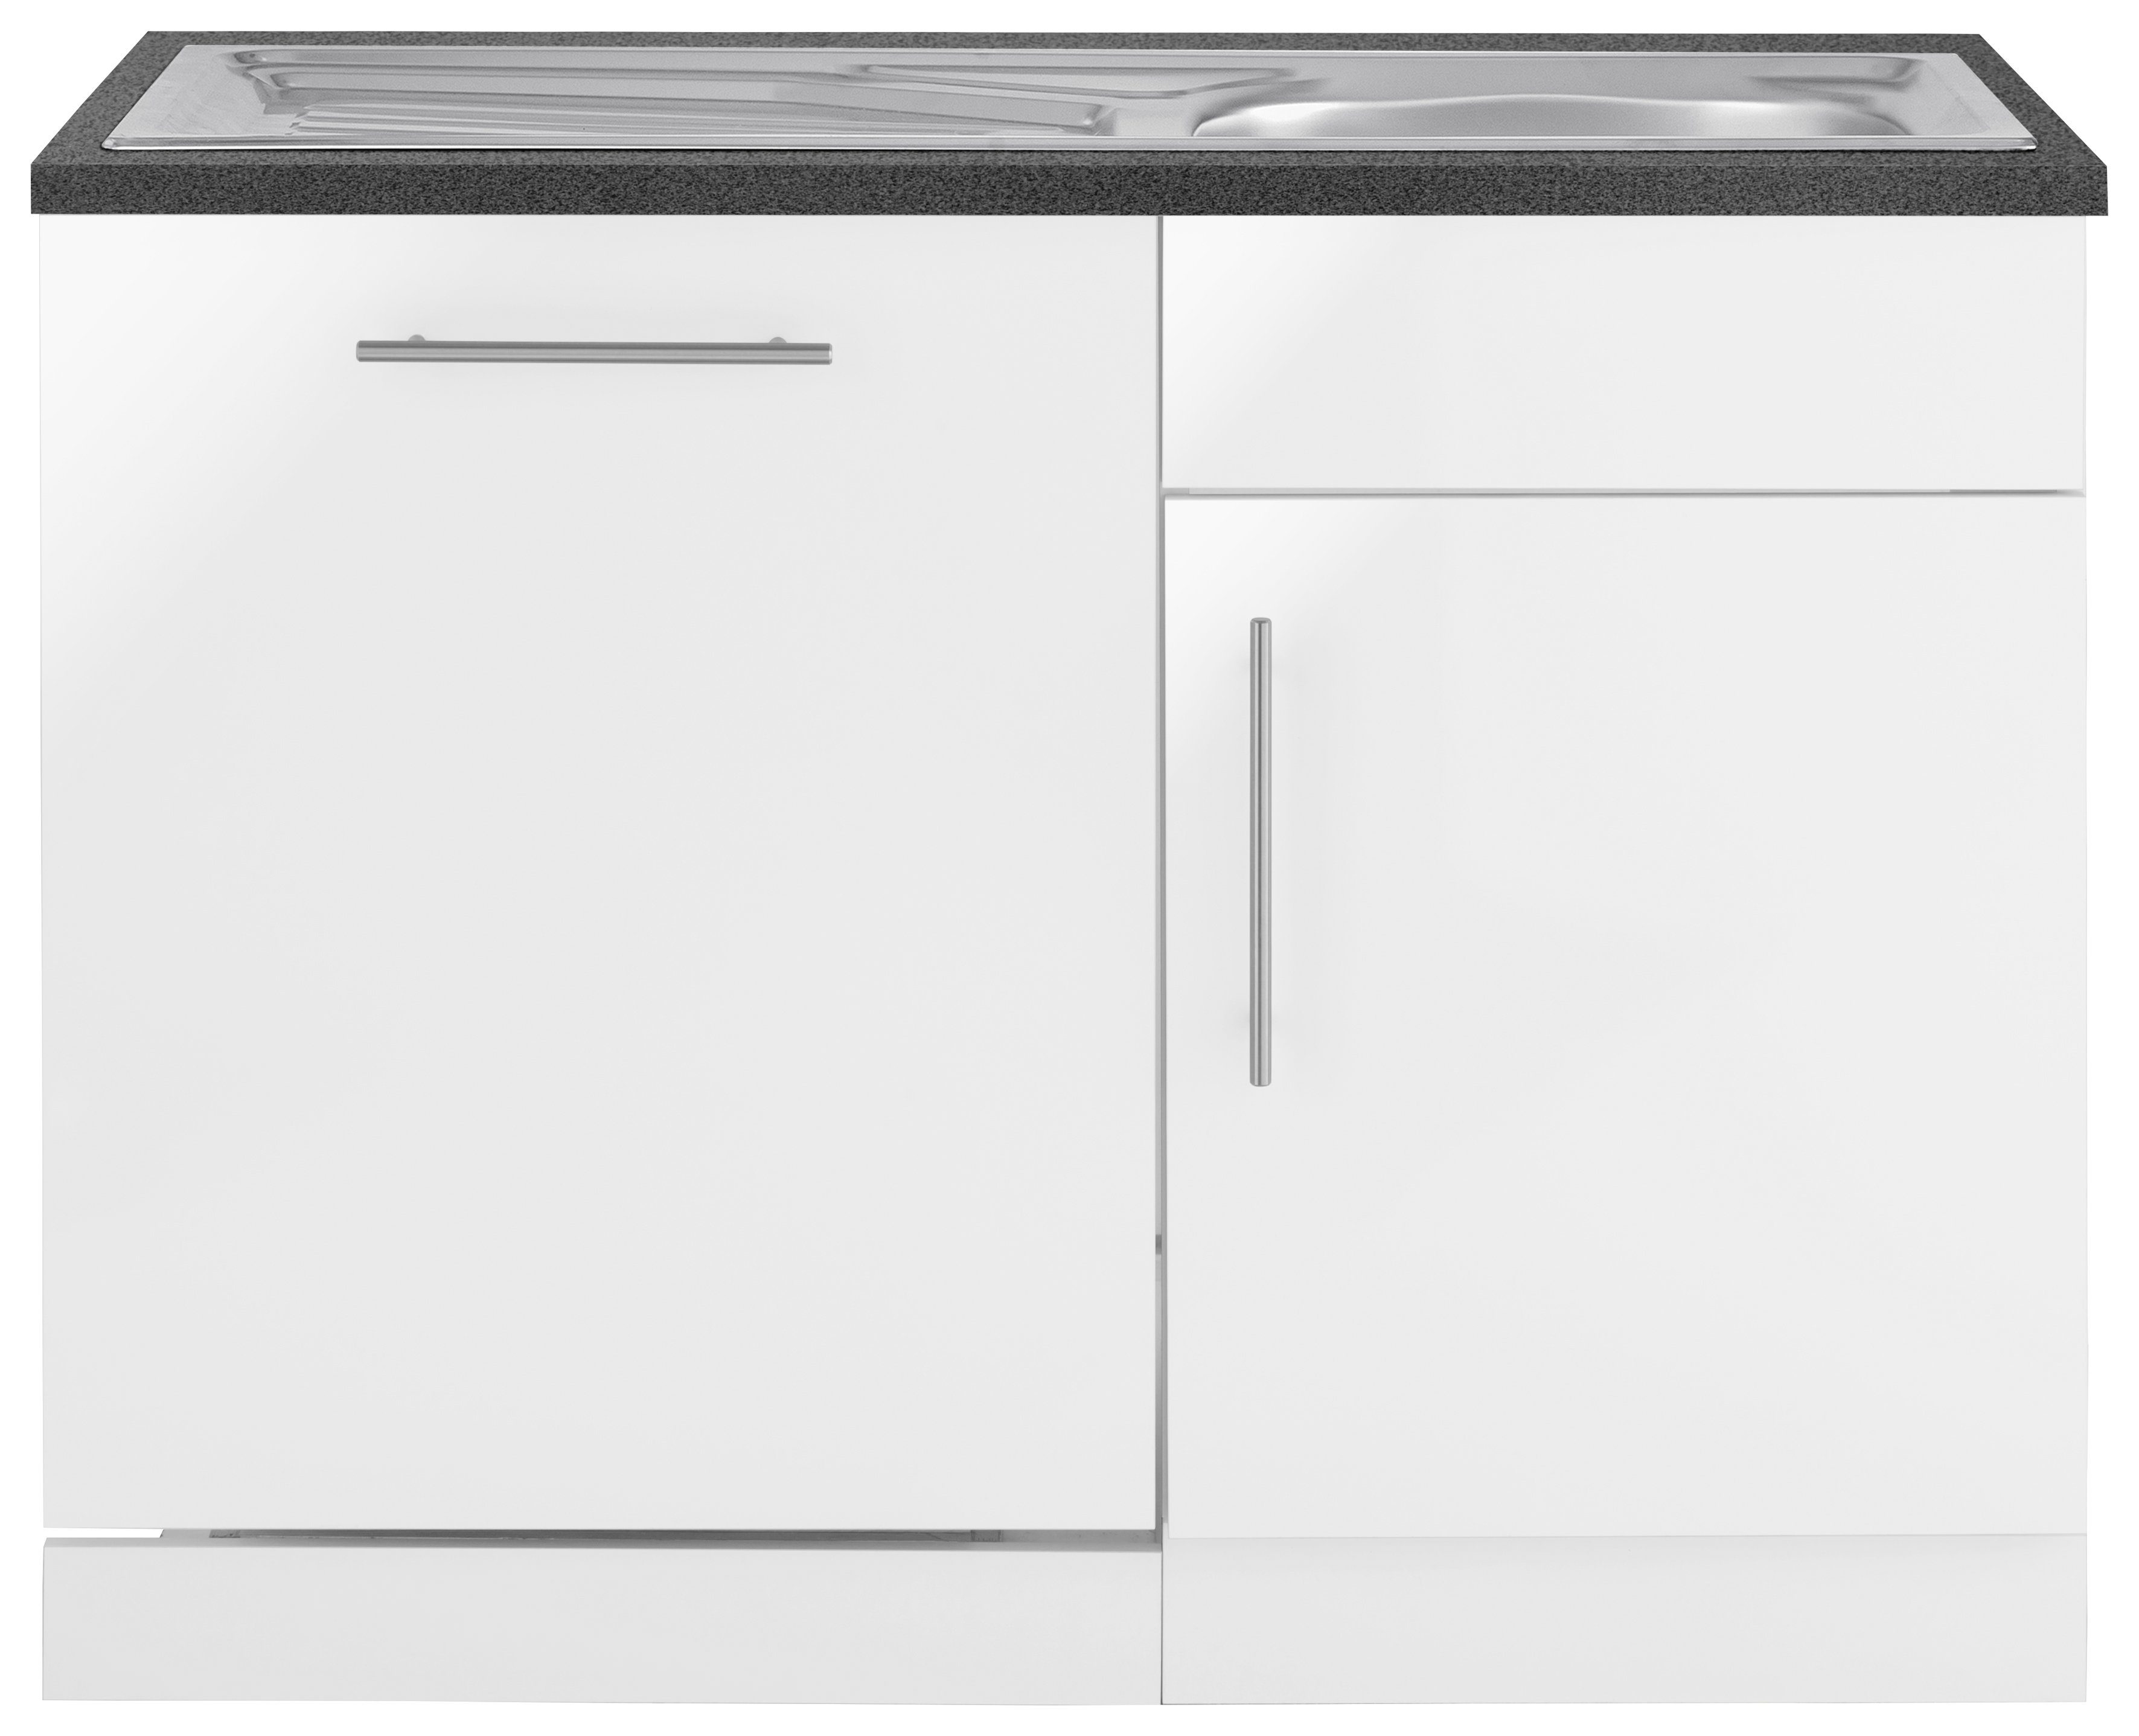 wiho Küchen Spülenschrank "Cali" 110 cm breit, inkl. Tür/Sockel für Geschirrspüler Front: Weiß Glanz, Korpus: Weiß, Arbeitsplatte: Granit Grau | Weiß